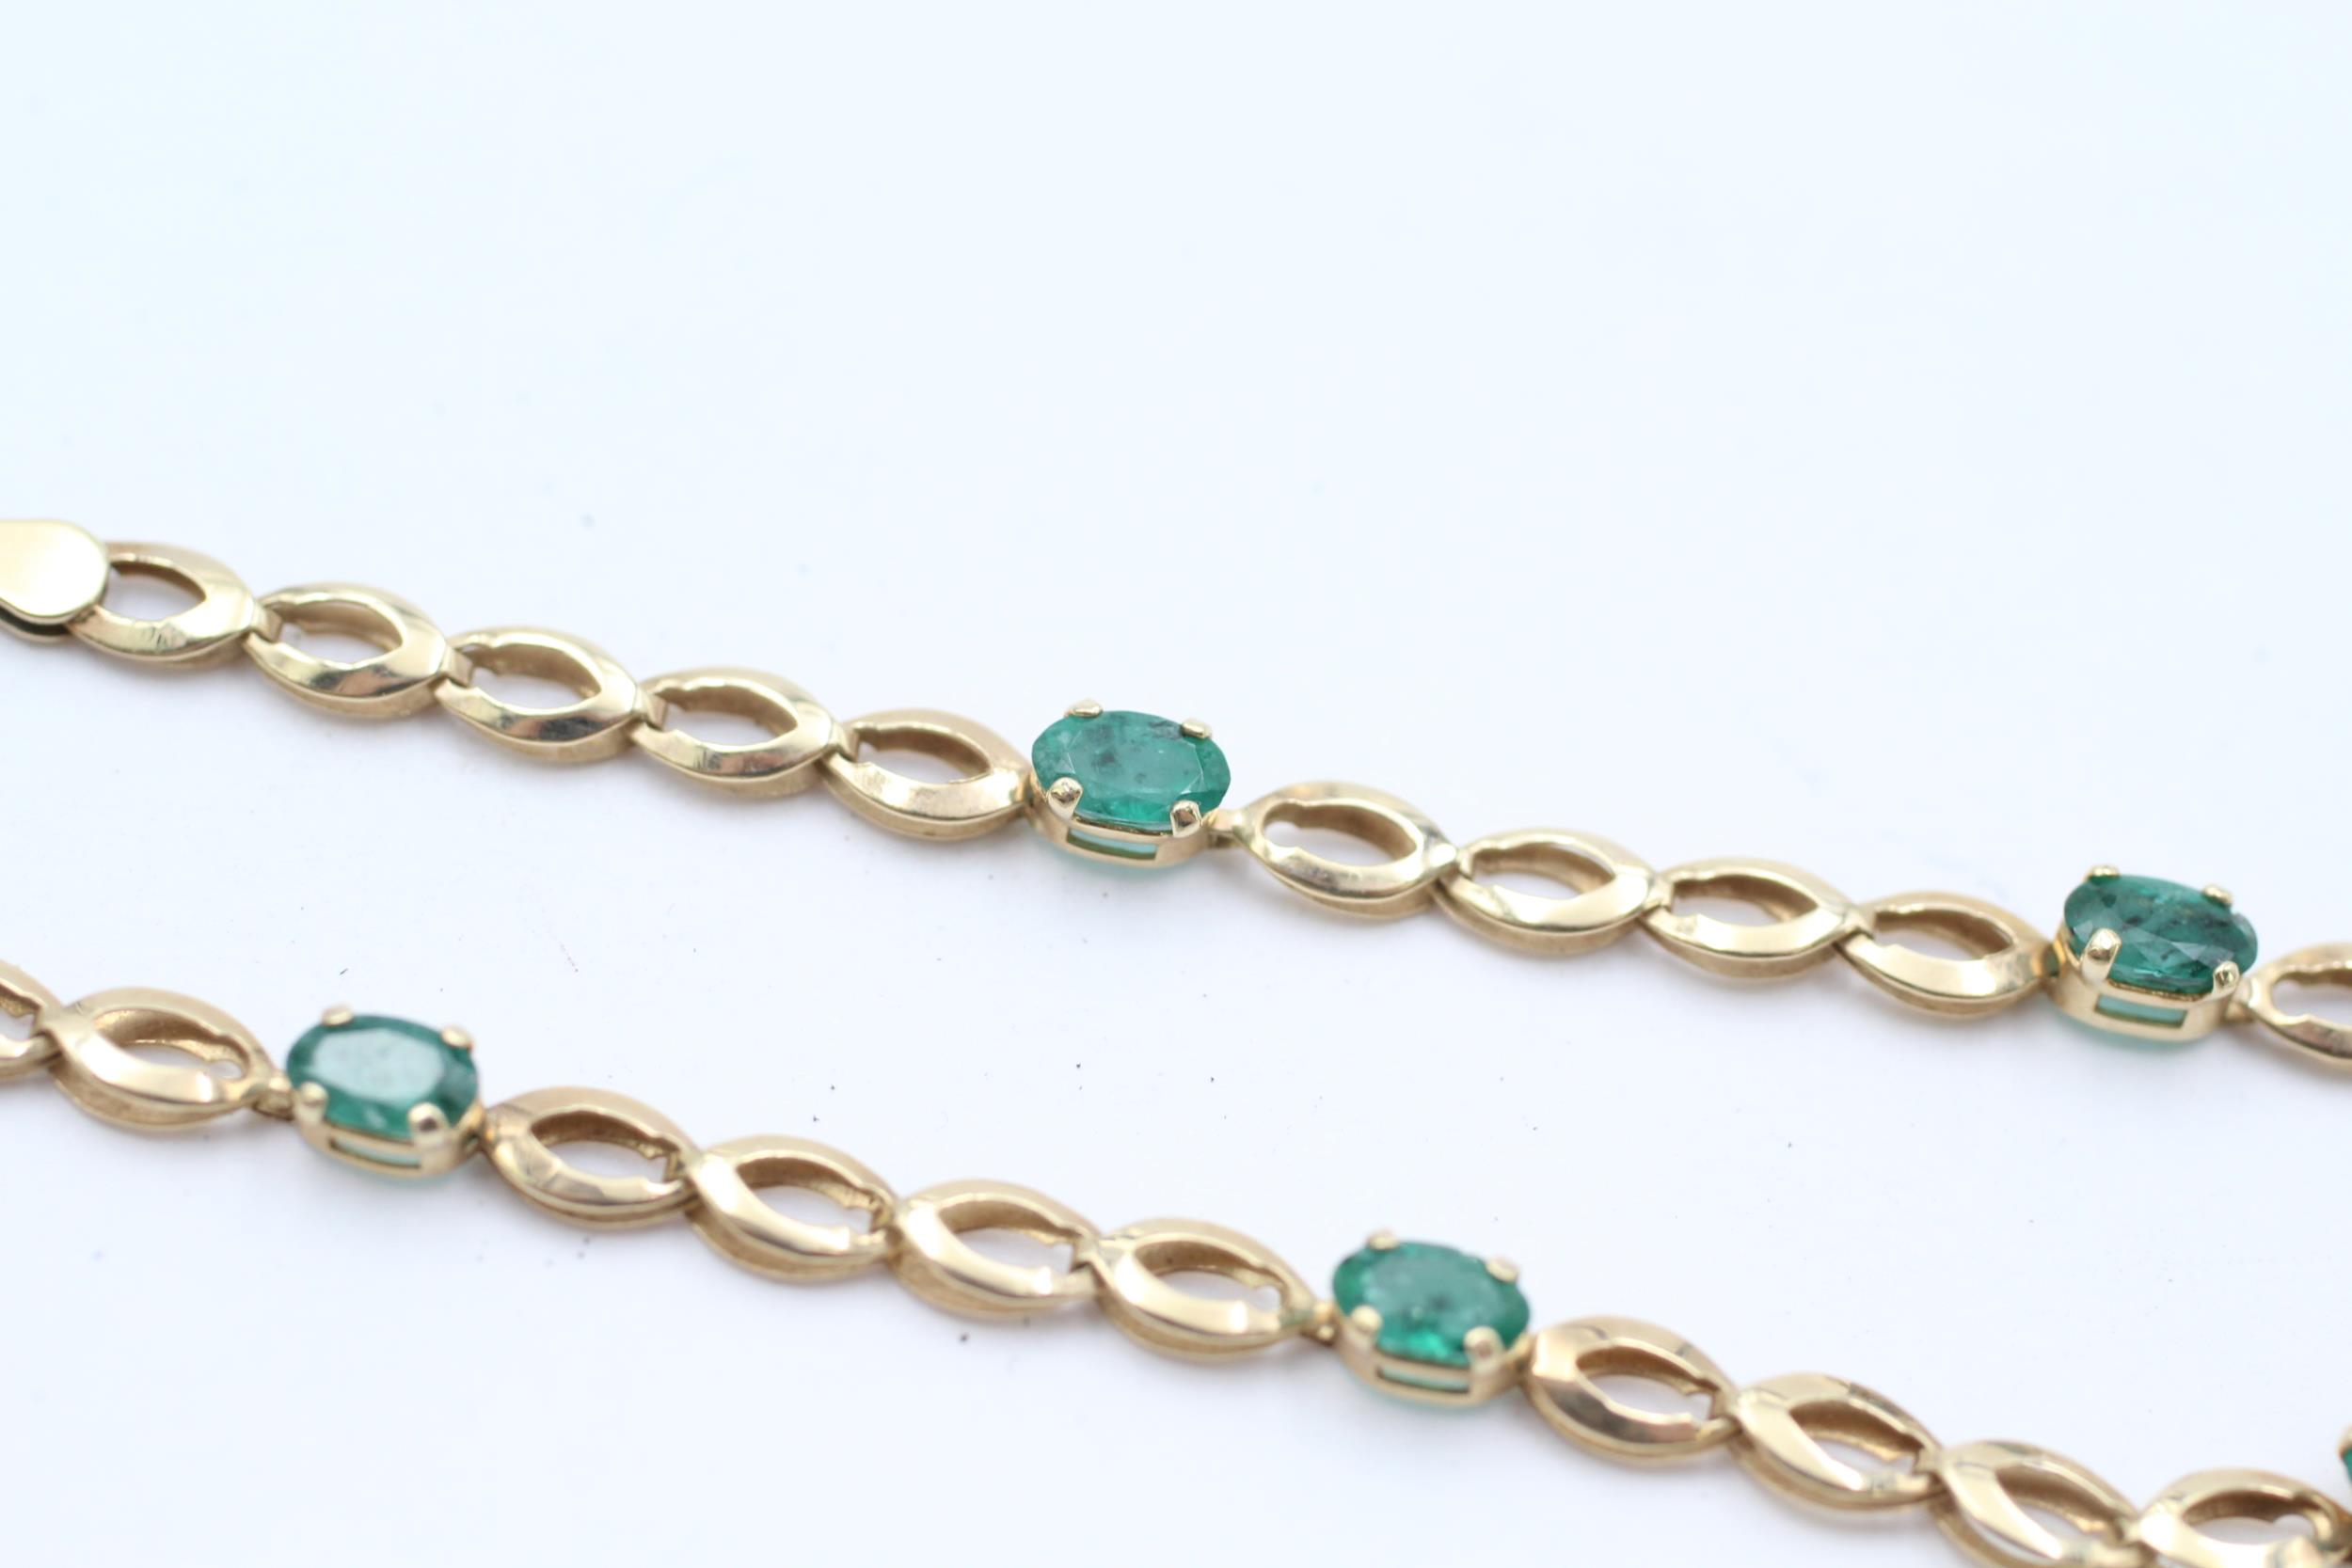 10ct gold emerald bracelet - 2.2 g - Image 2 of 5